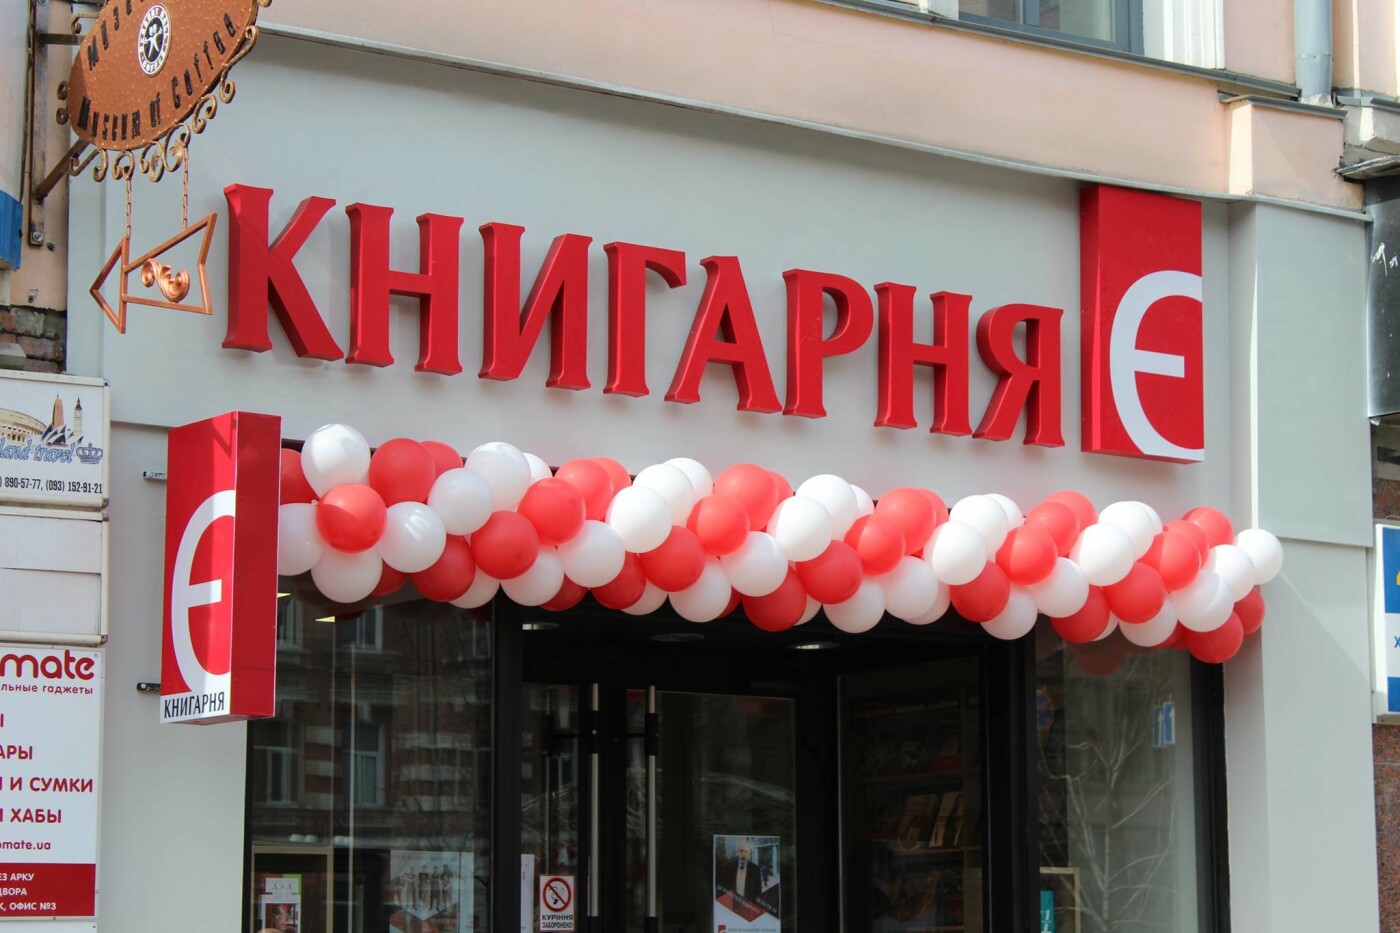 Книжные магазины в Киеве: график работы, телефоны, карты лояльности, адреса